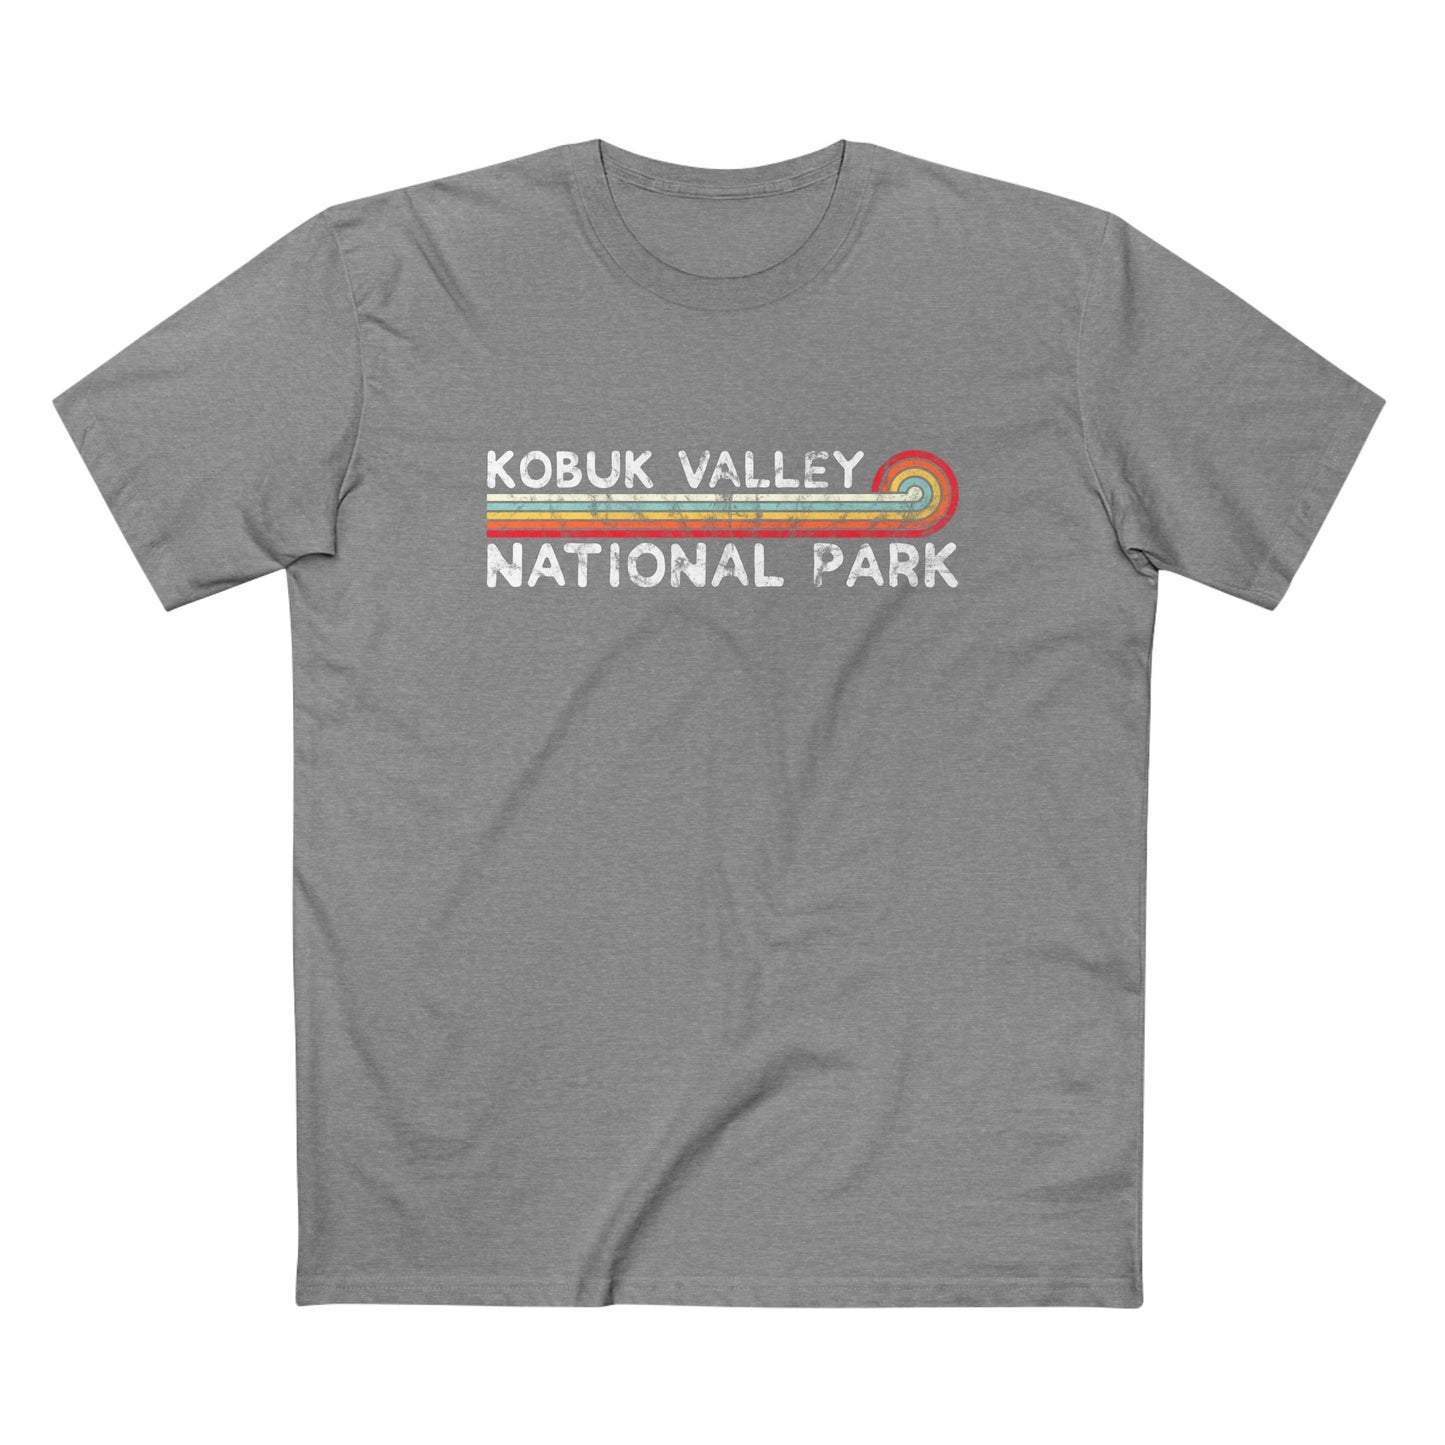 Kobuk Valley National Park T-Shirt - Vintage Stretched Sunrise